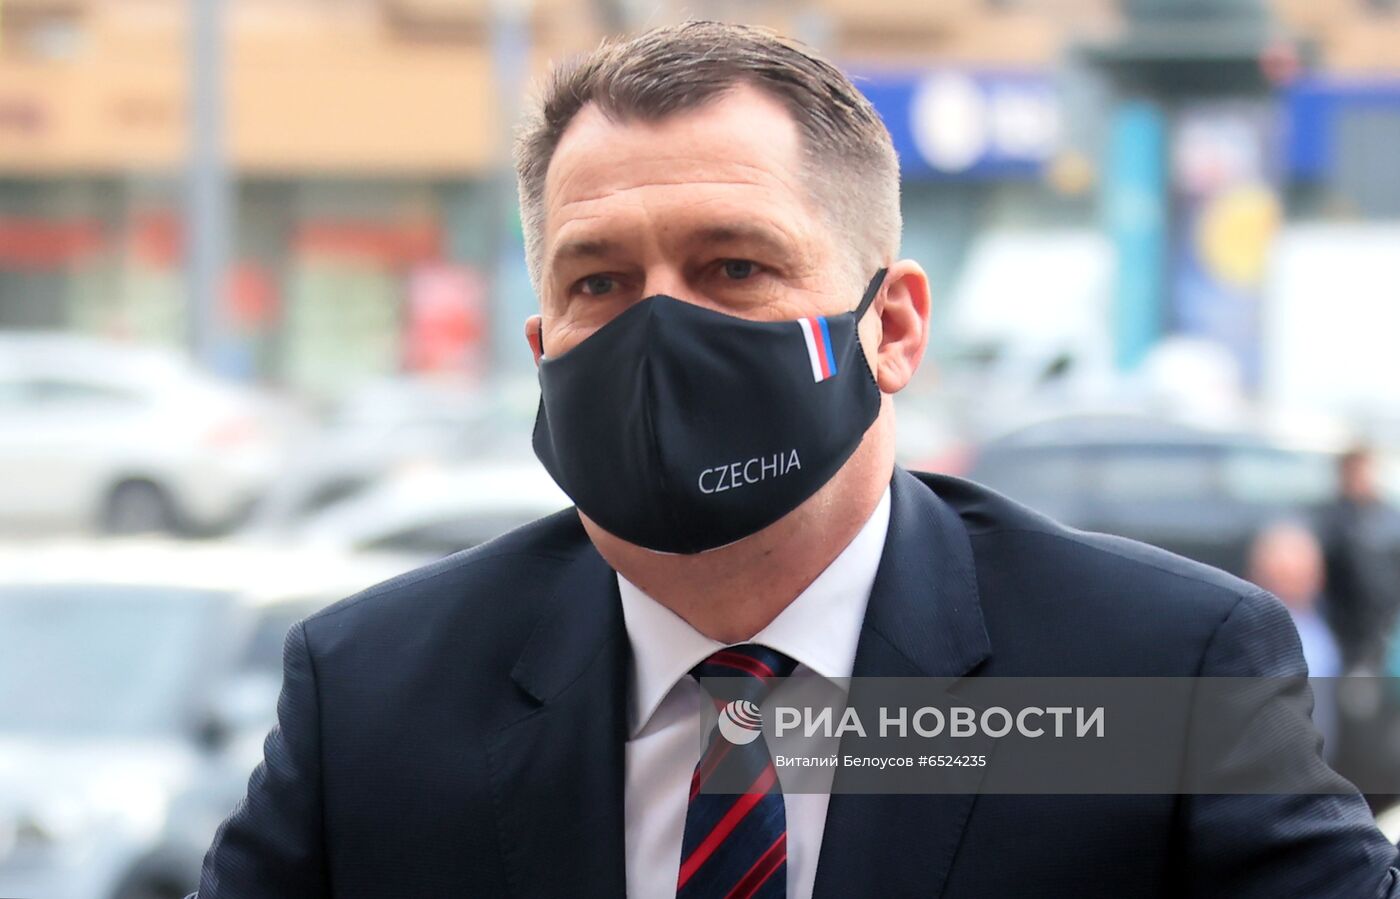 Посол Чехии вызван в МИД России